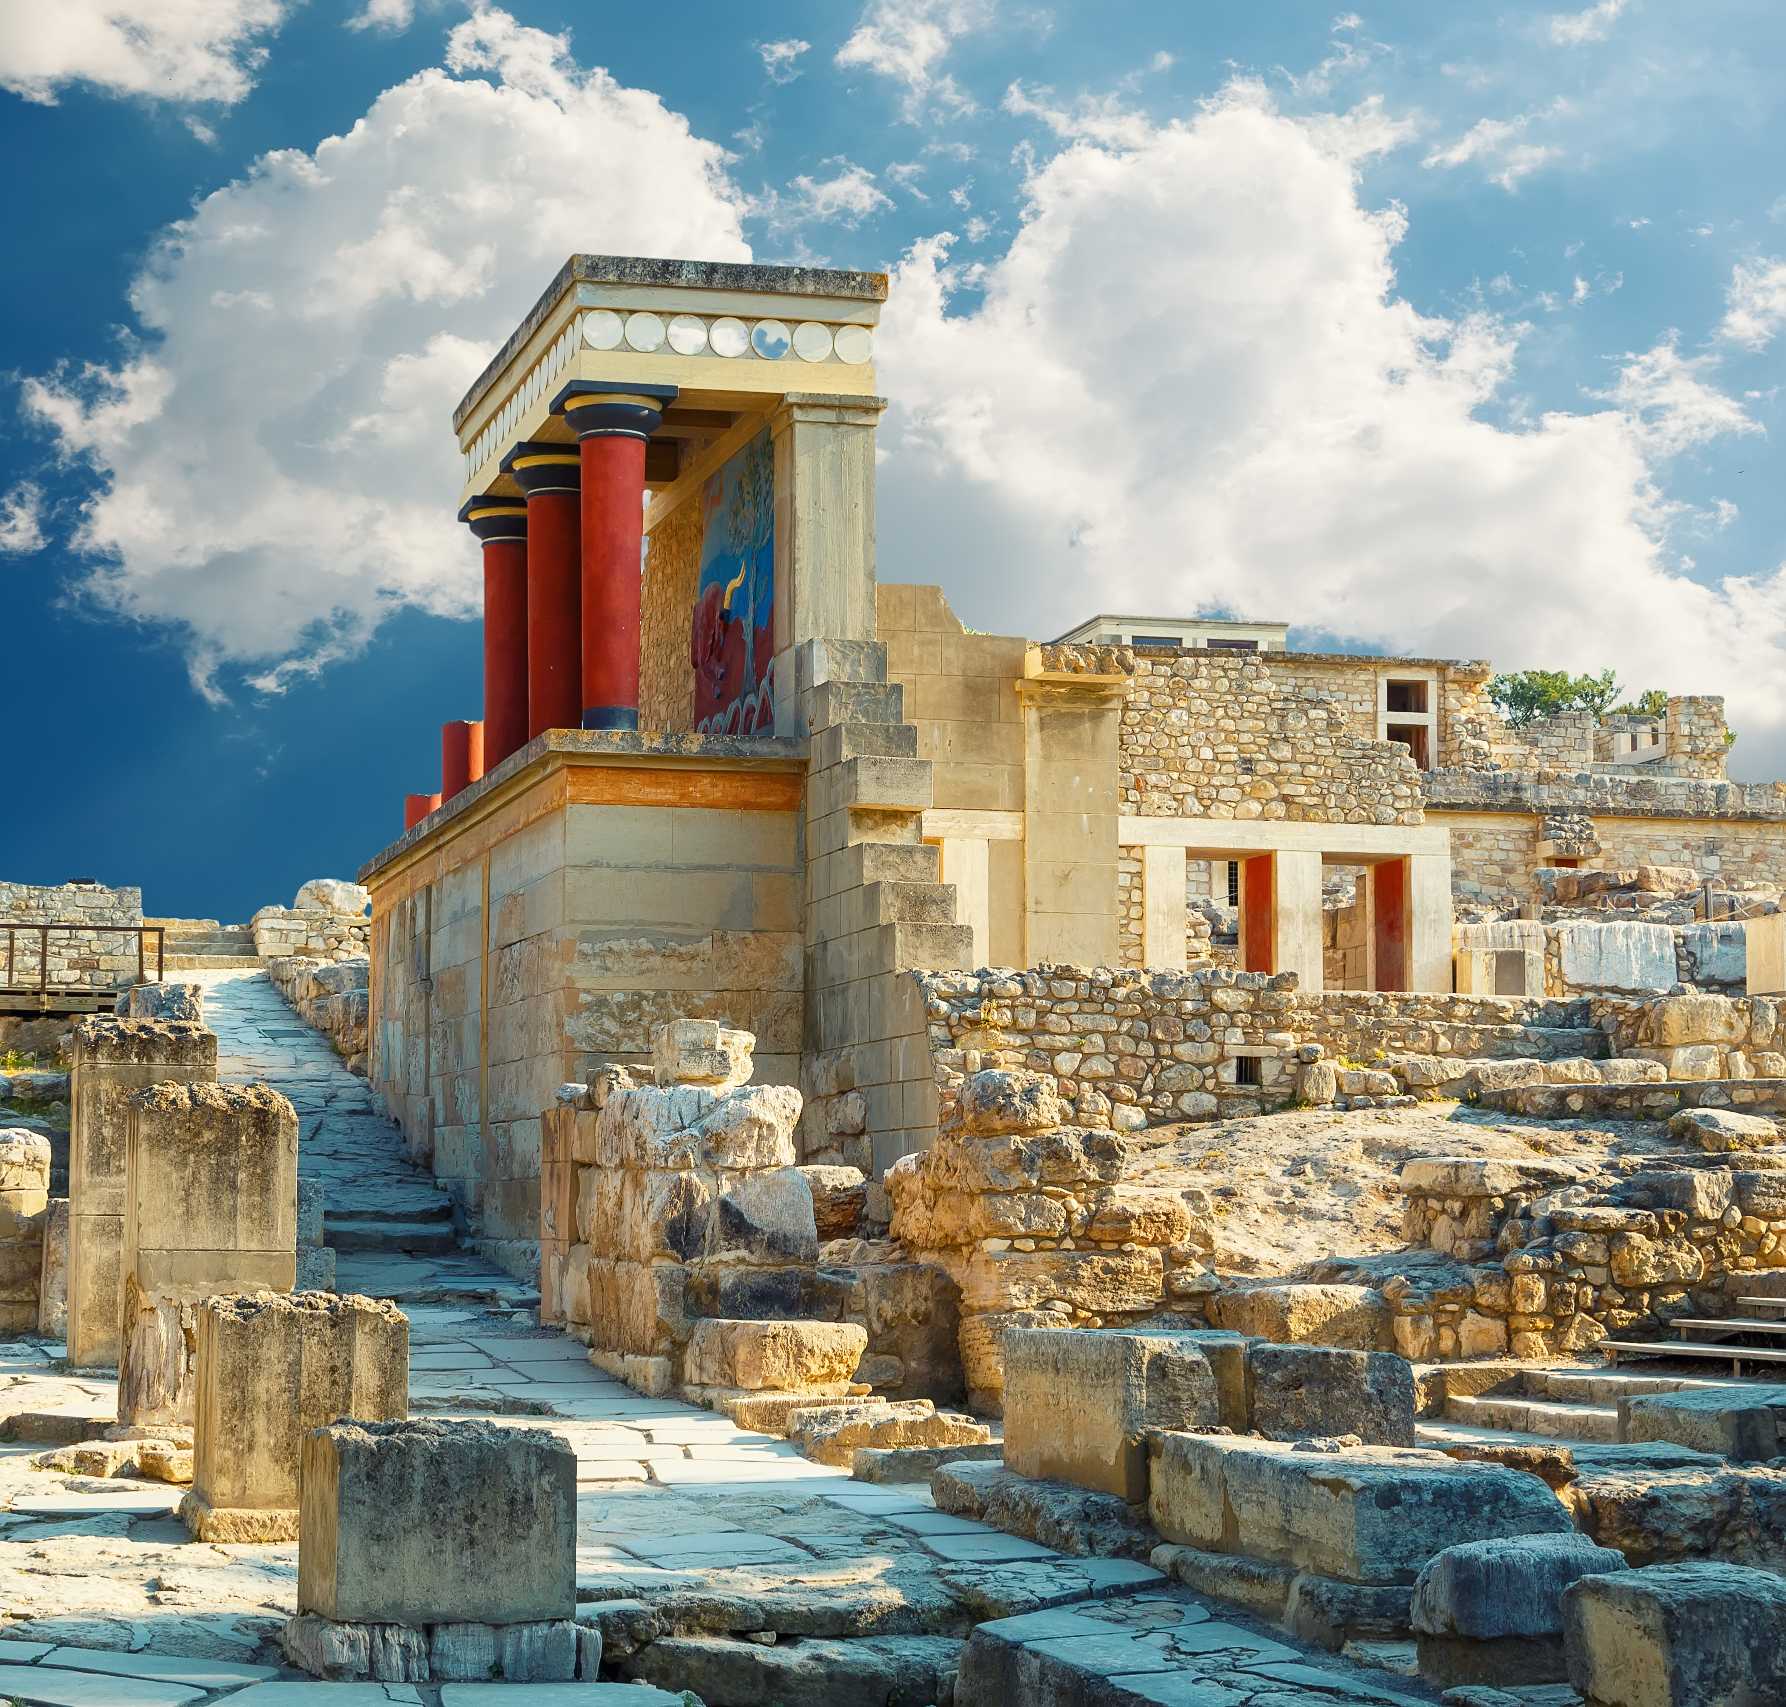 Knossos palace at Crete. Heraklion